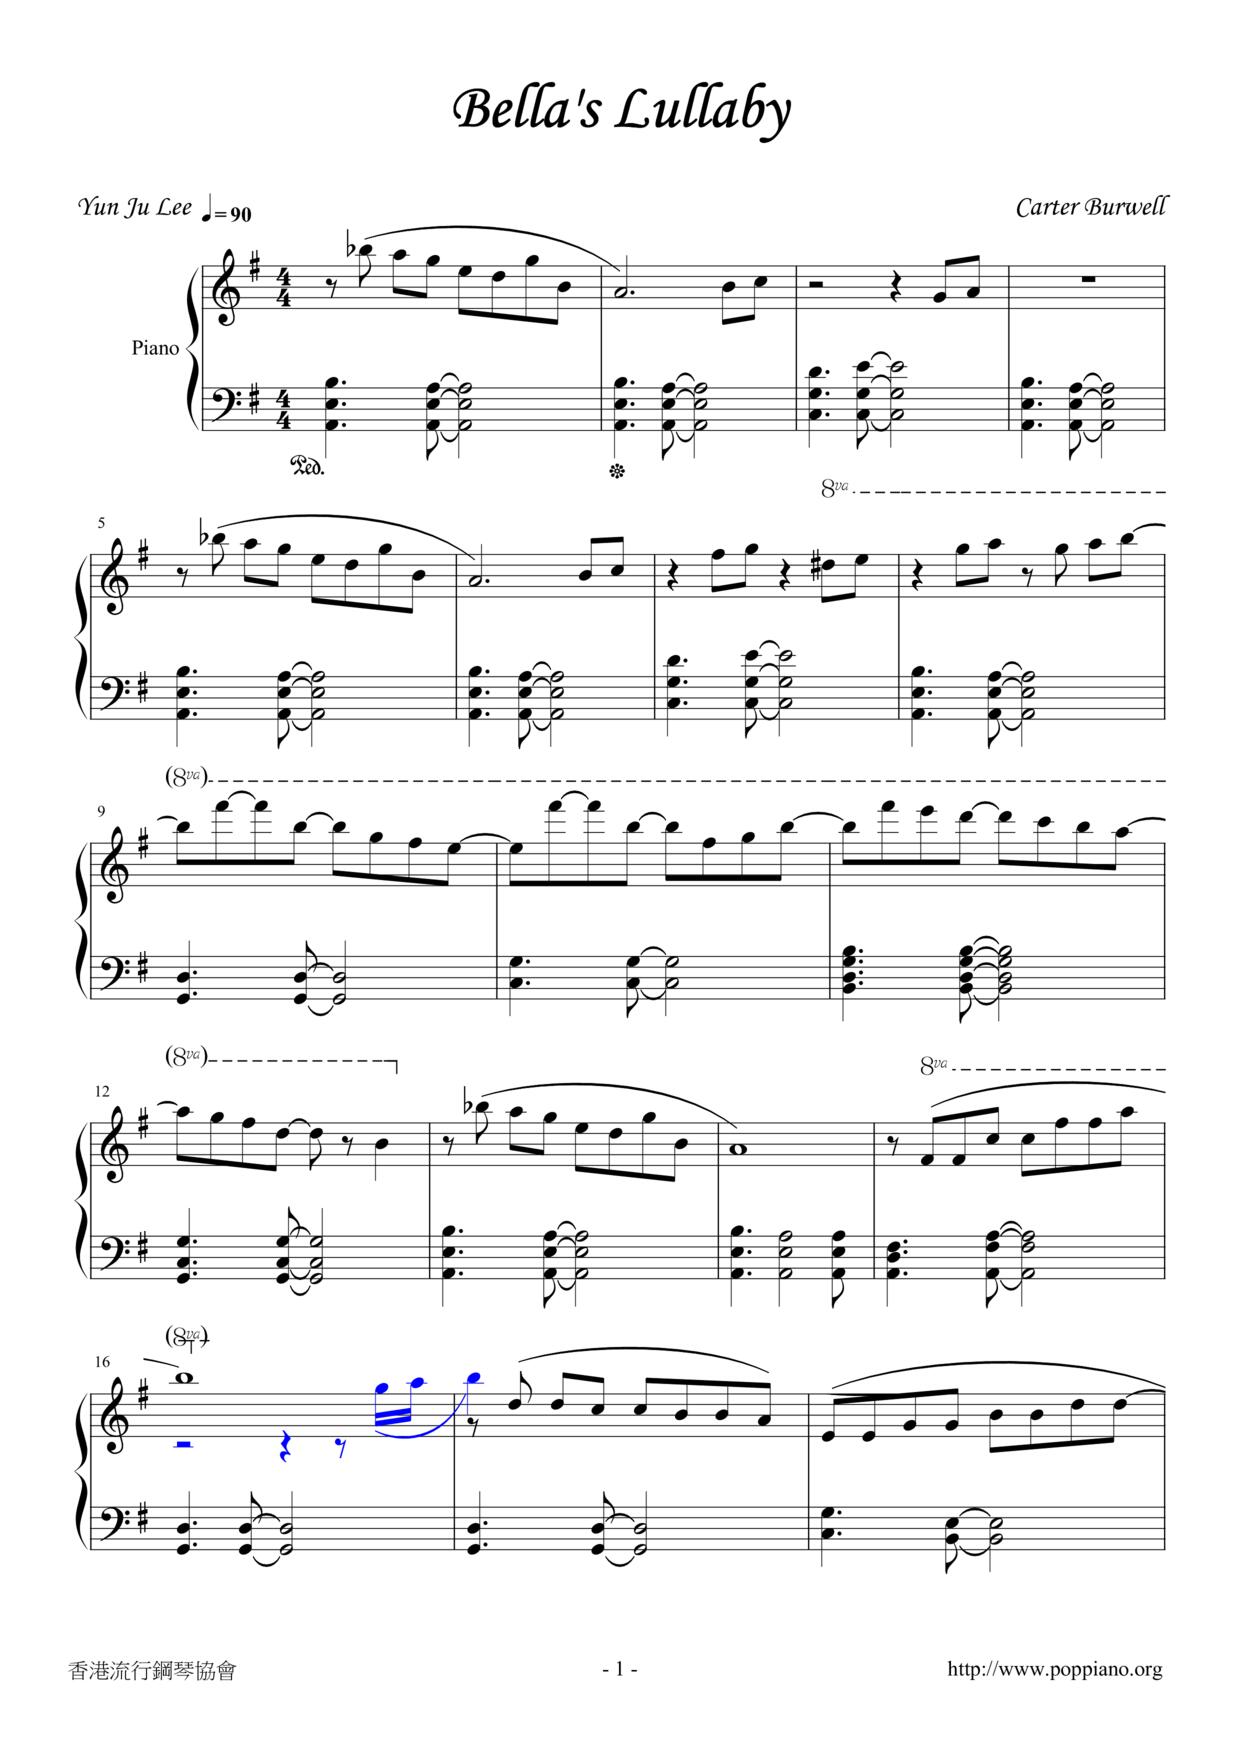 carter-burwell-bella-s-lullaby-sheet-music-pdf-free-score-download